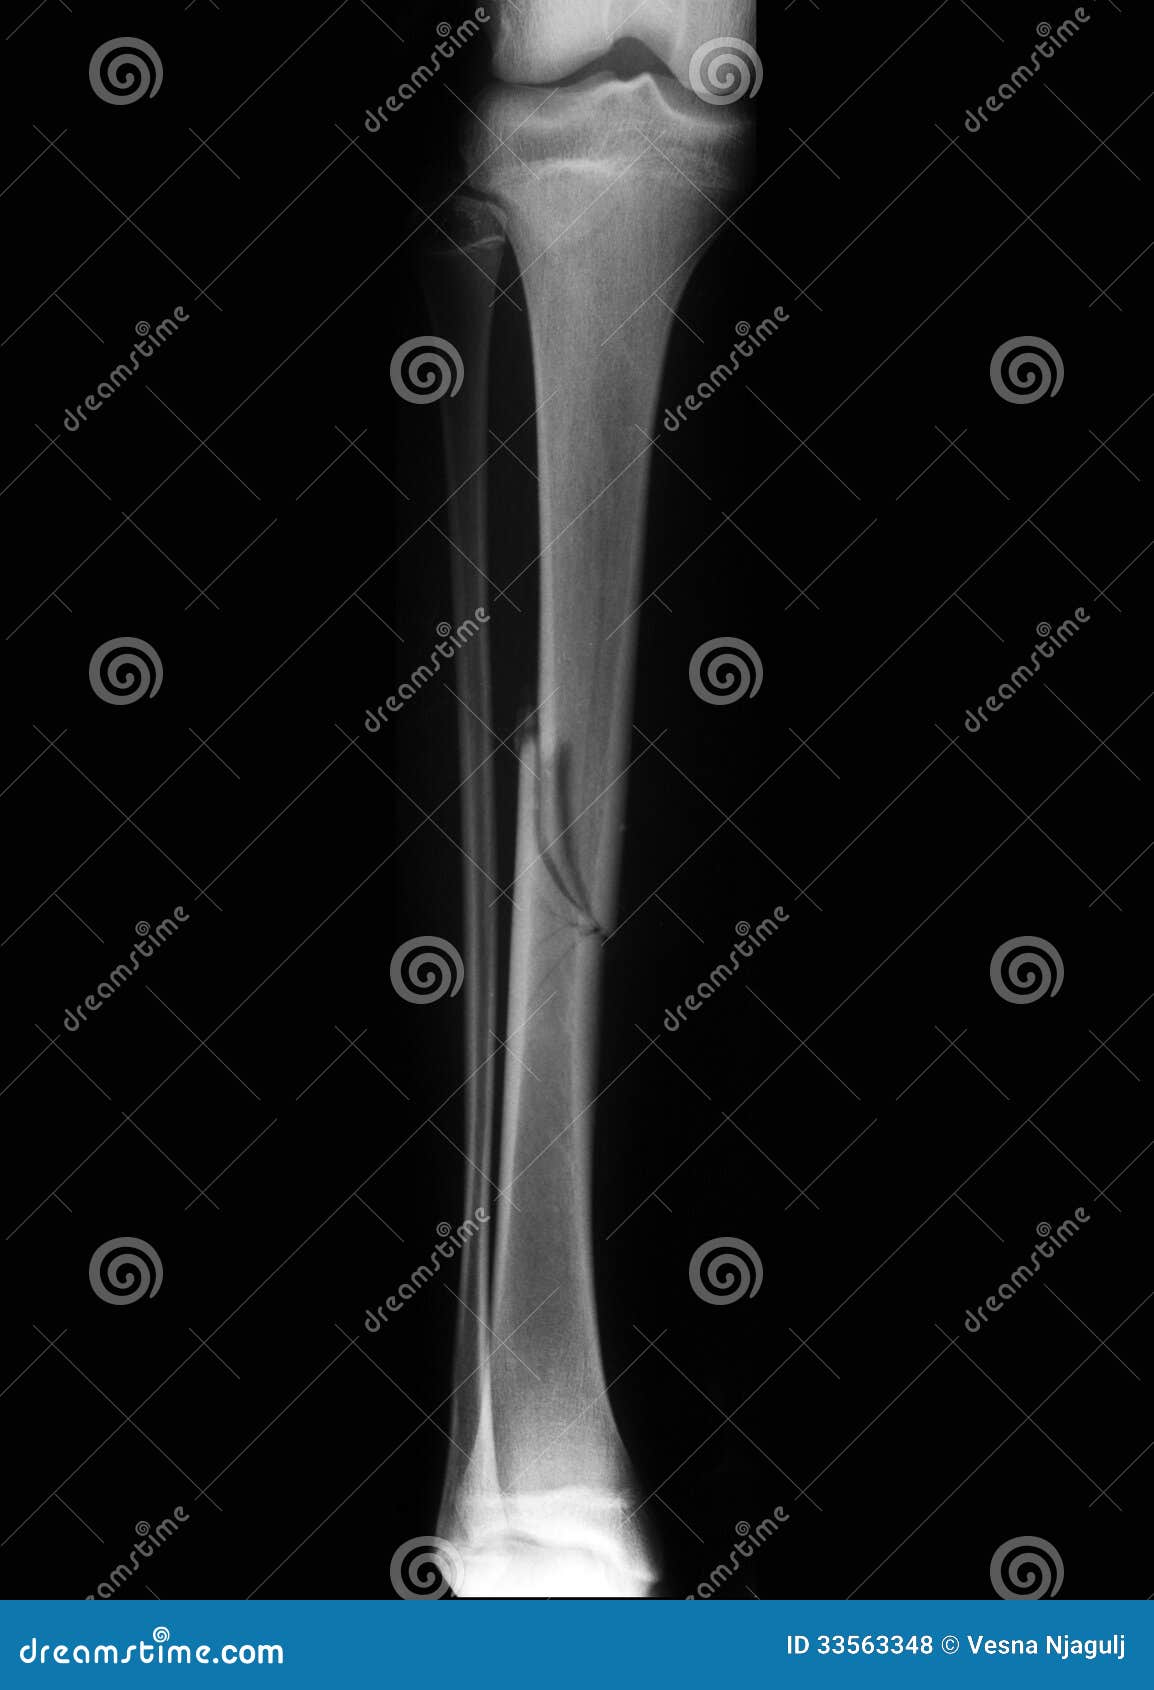 broken leg (broken tibia) radiography